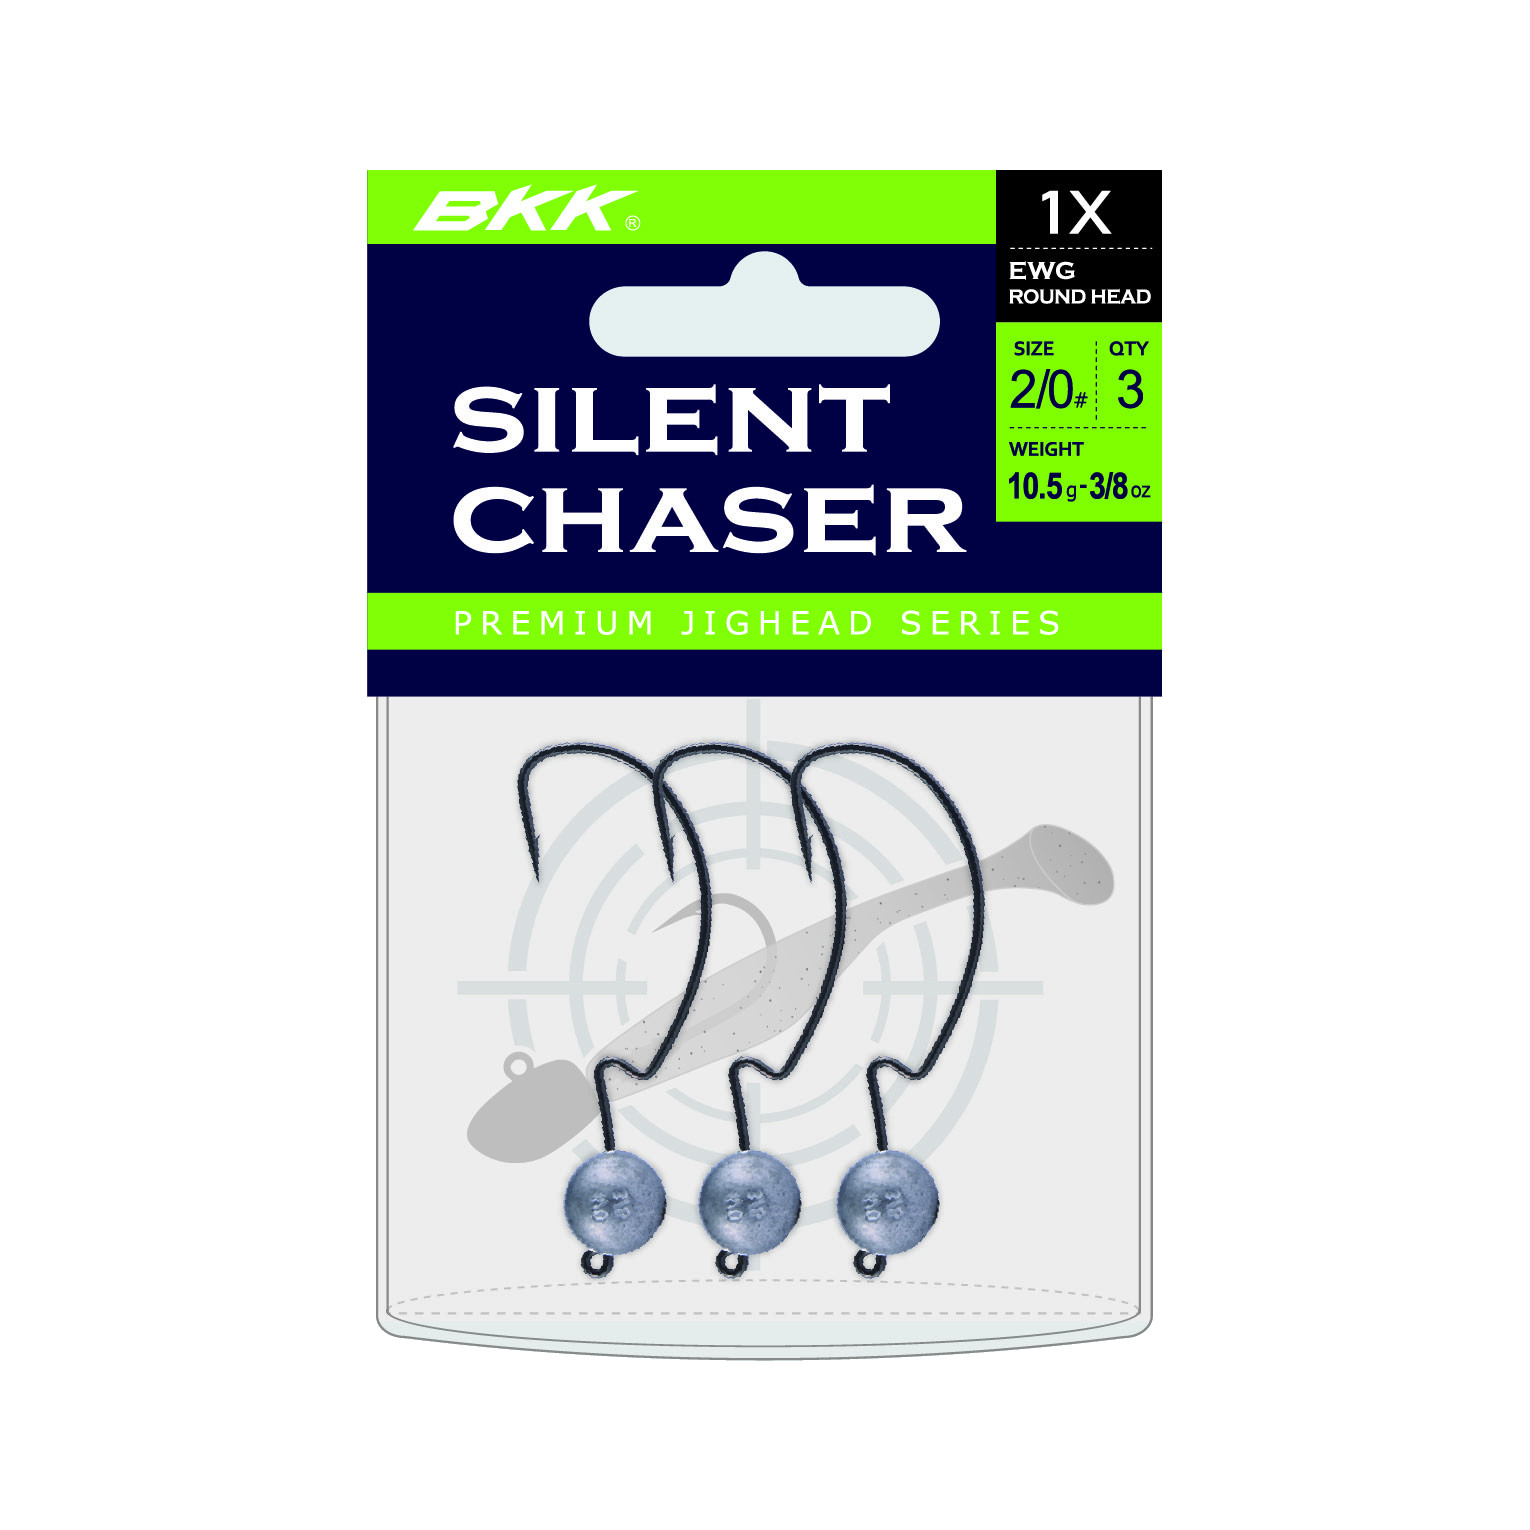 BKK Silent Chaser 1X EWG Round Head Loodkop #4/0